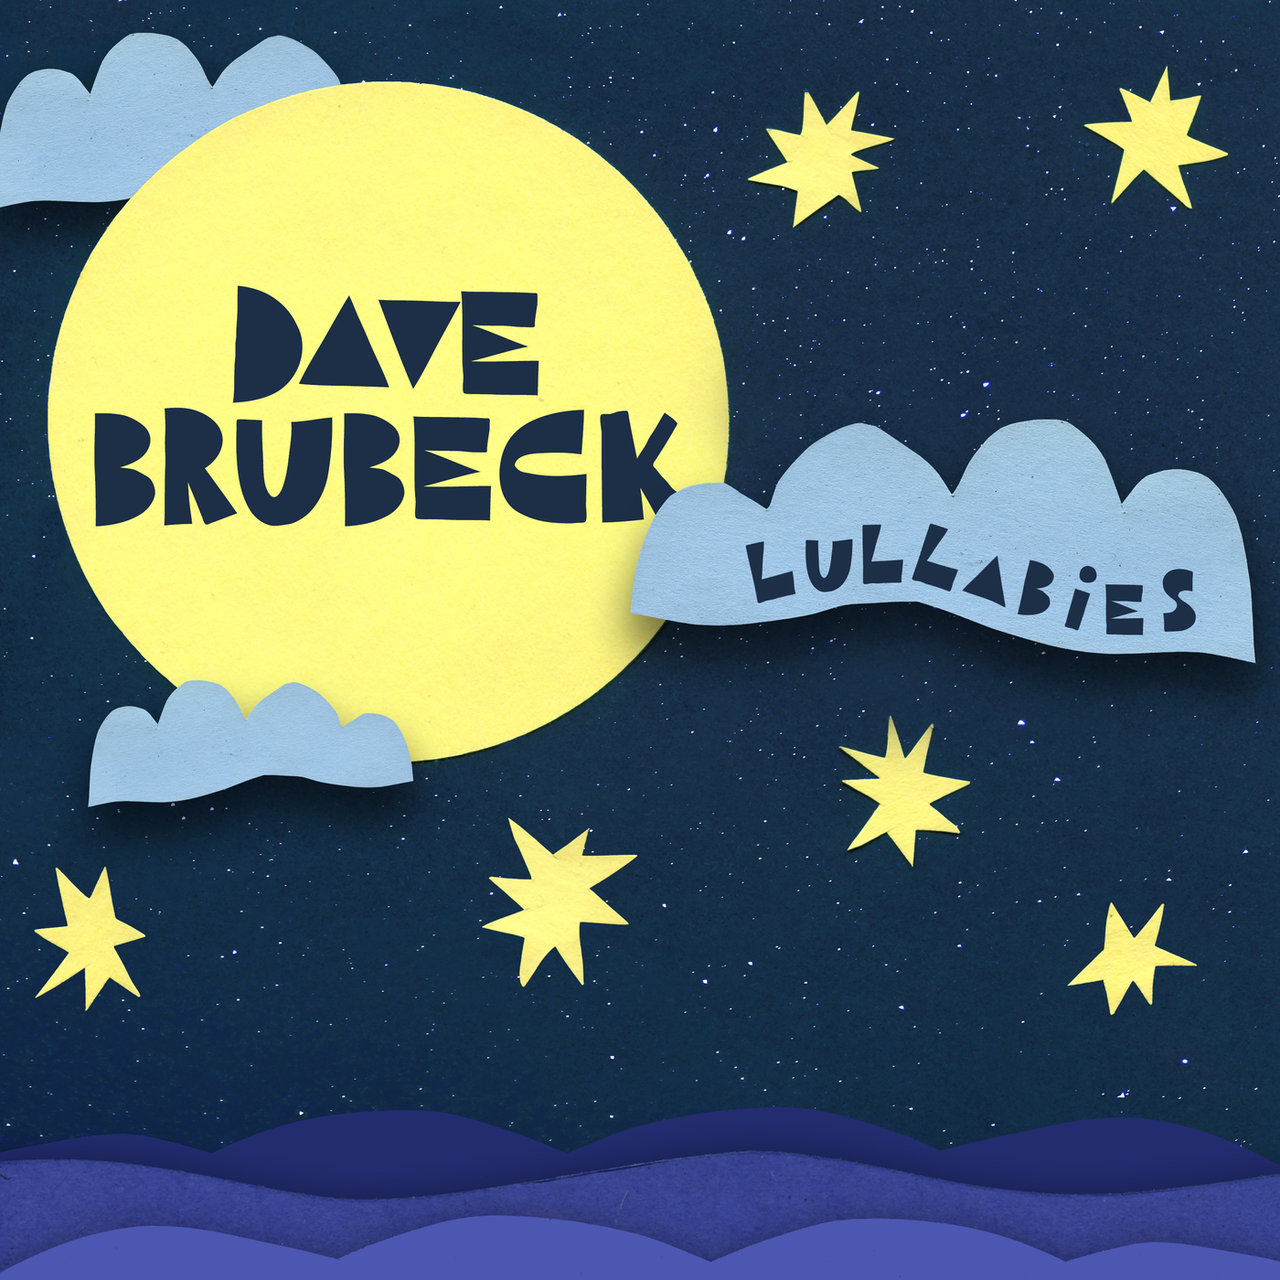 Dave Brubeck – Lullabies (2020) [FLAC 24bit/48kHz]